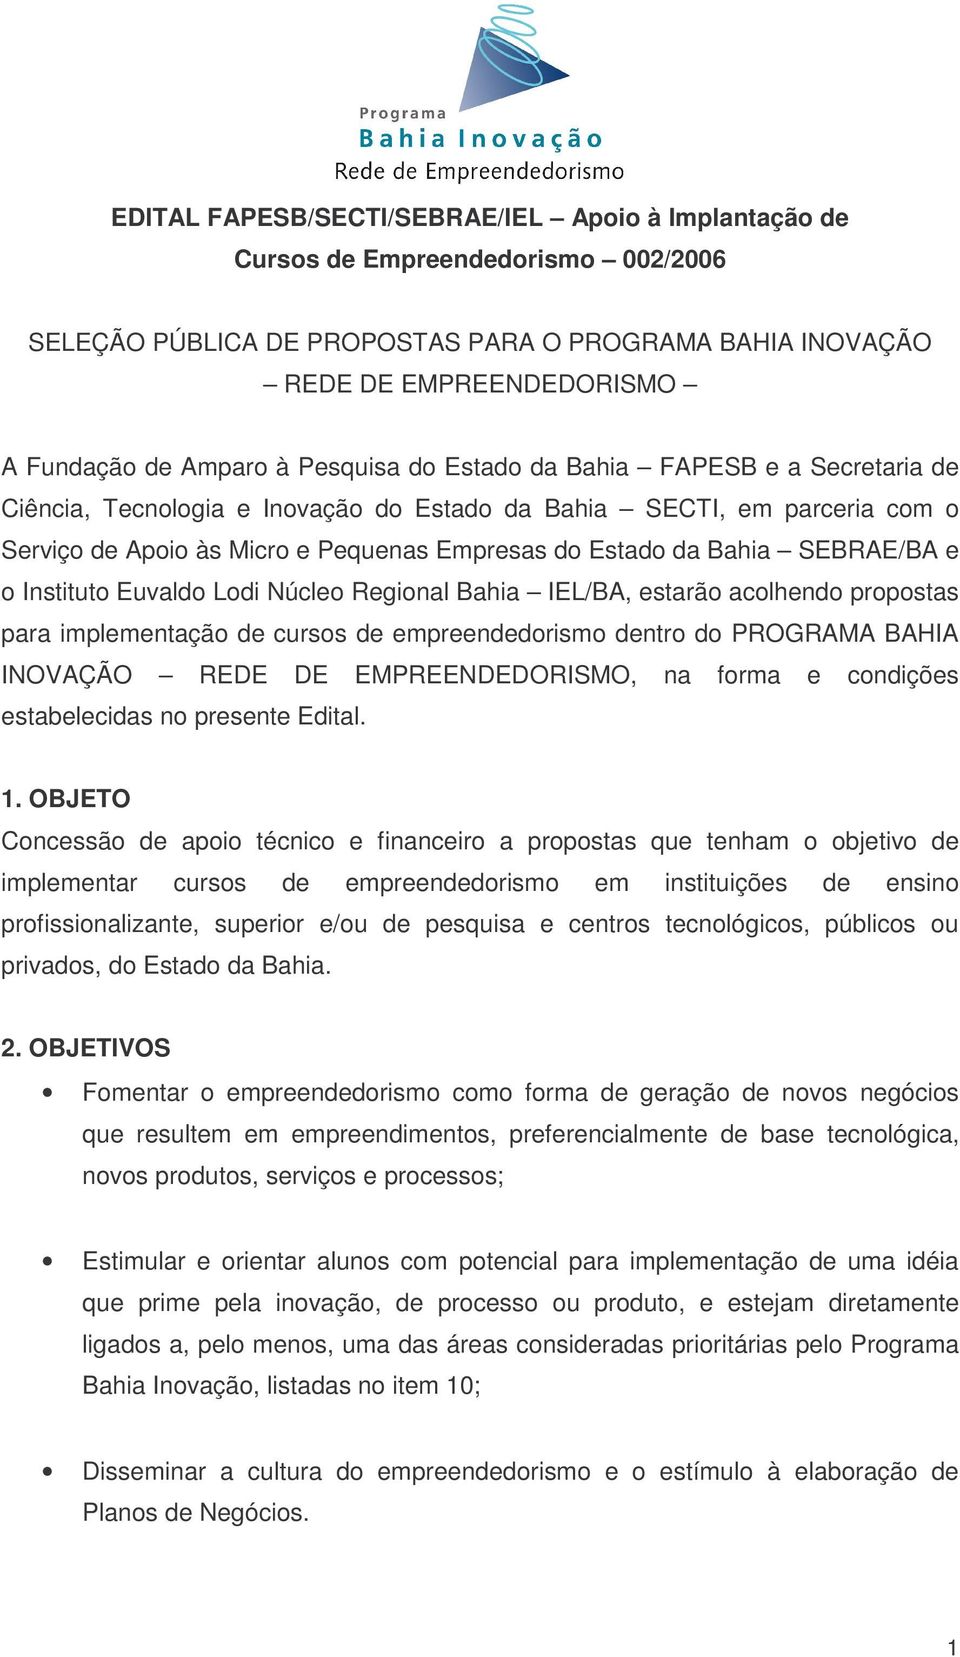 SEBRAE/BA e o Instituto Euvaldo Lodi Núcleo Regional Bahia IEL/BA, estarão acolhendo propostas para implementação de cursos de empreendedorismo dentro do PROGRAMA BAHIA INOVAÇÃO REDE DE